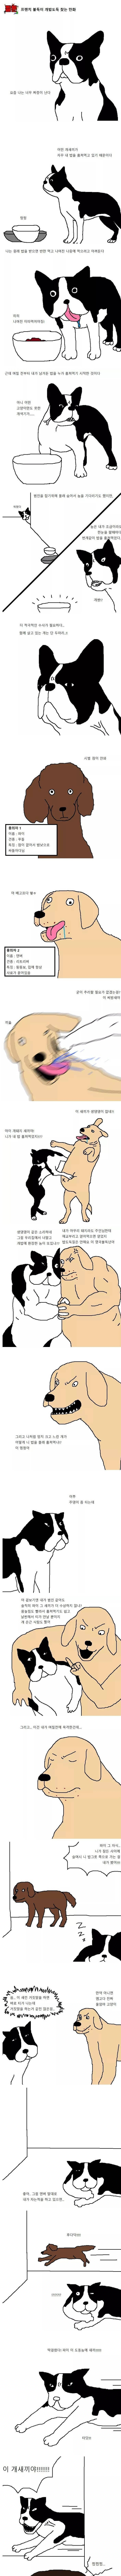 개밥도둑 잡는 만화 | 인스티즈